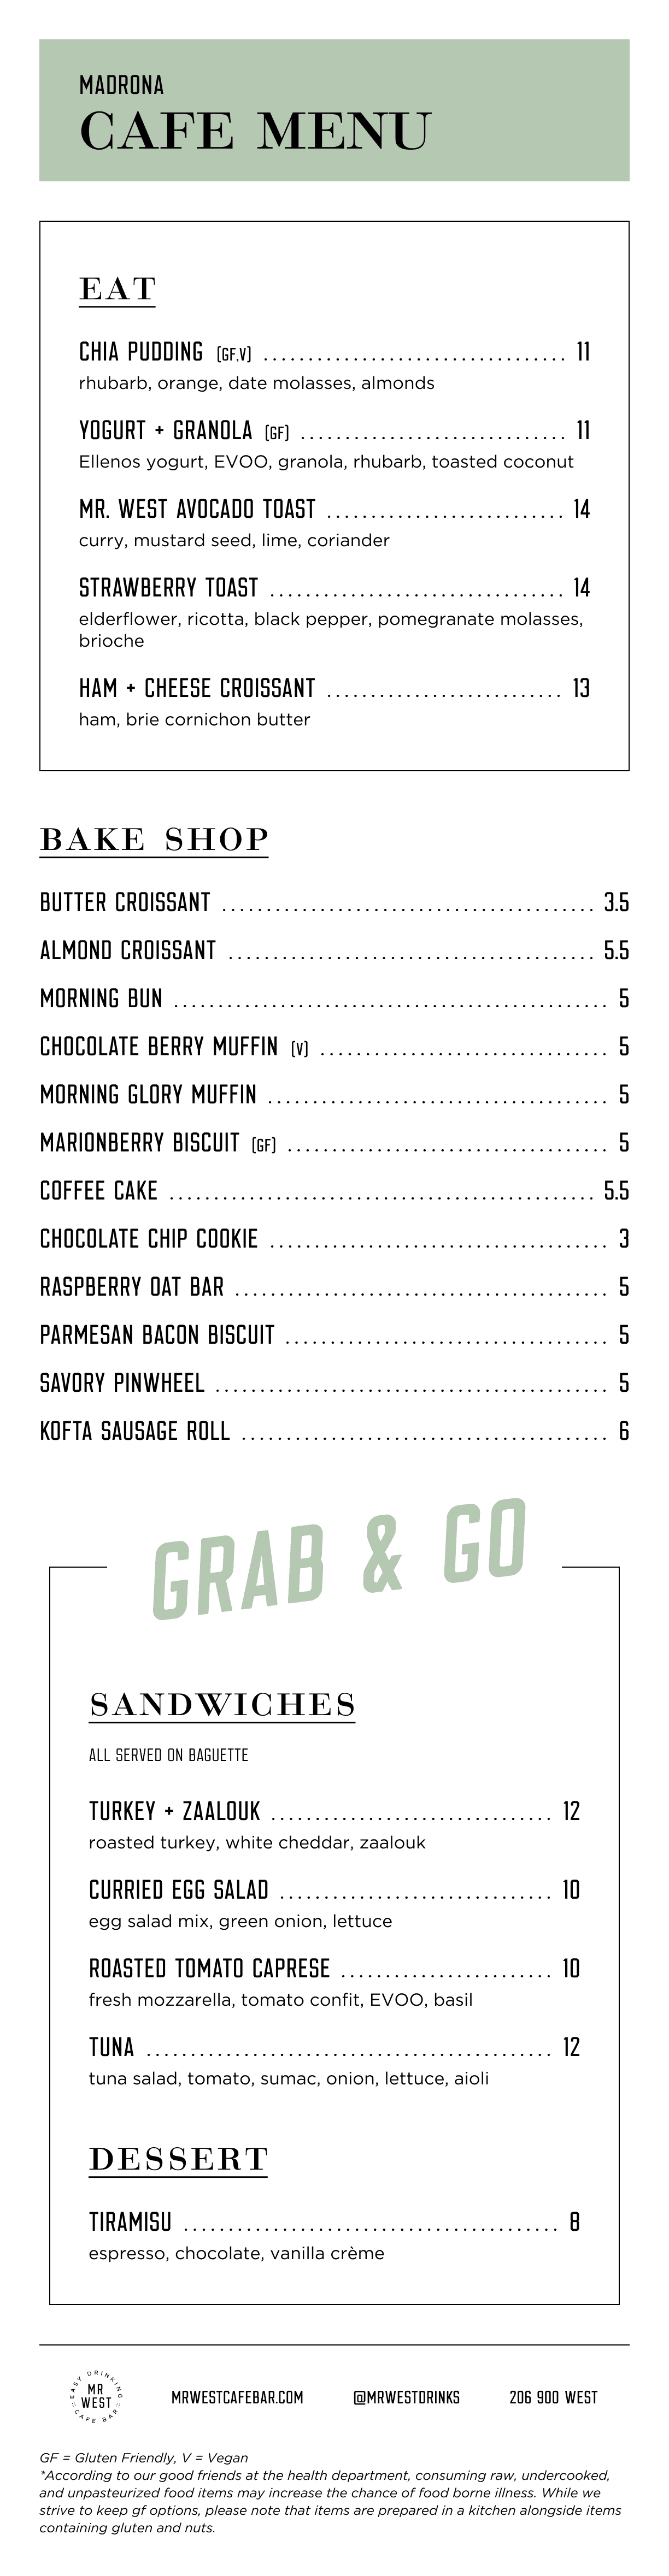 Madrona cafe menu.